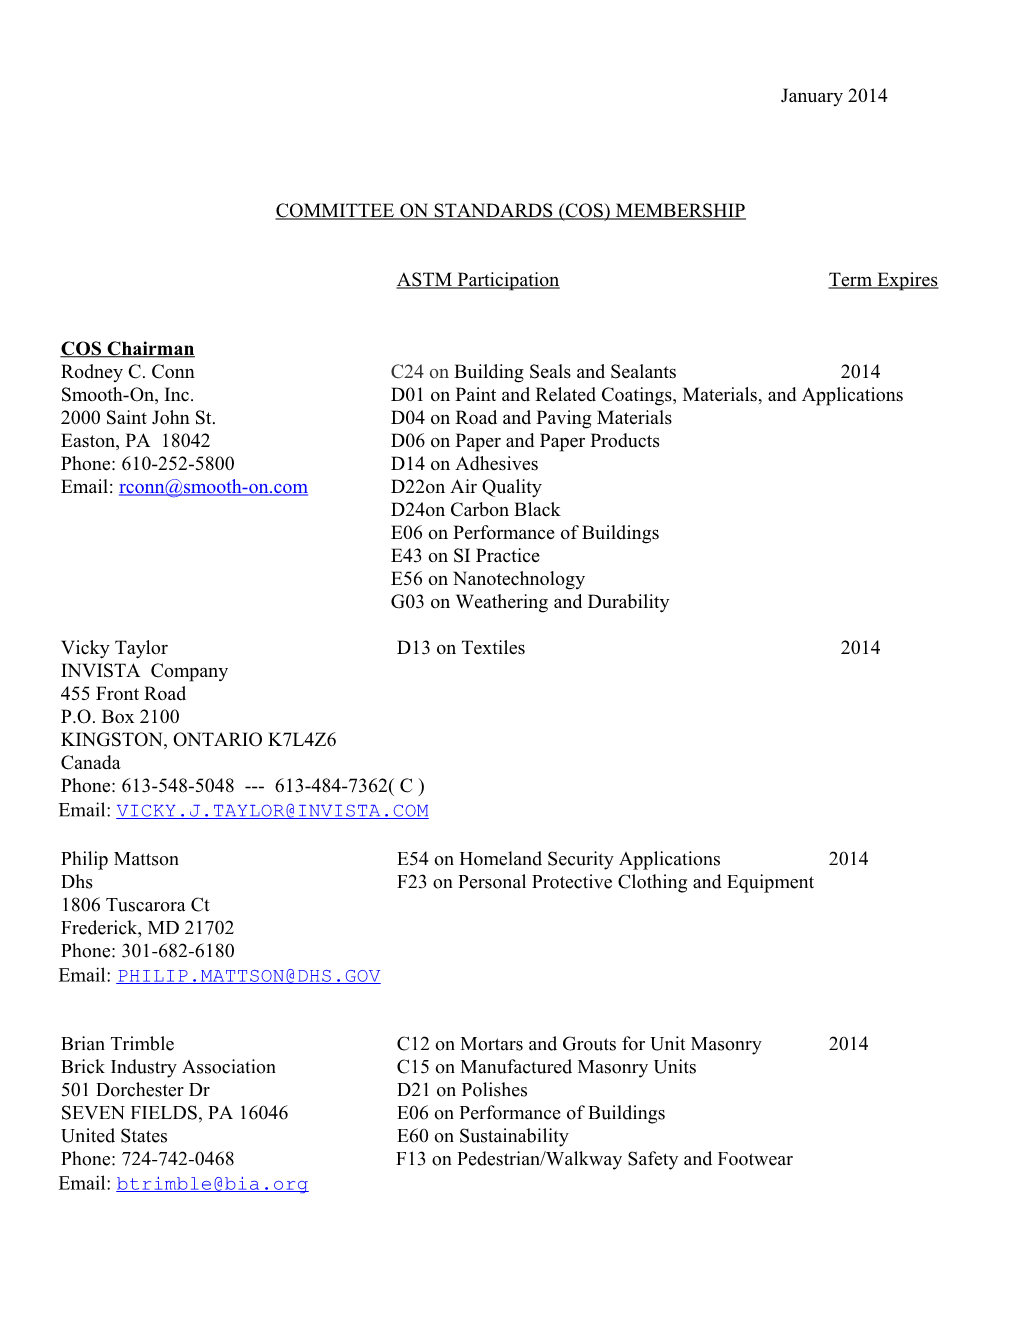 Committee on Standards (Cos) Membership